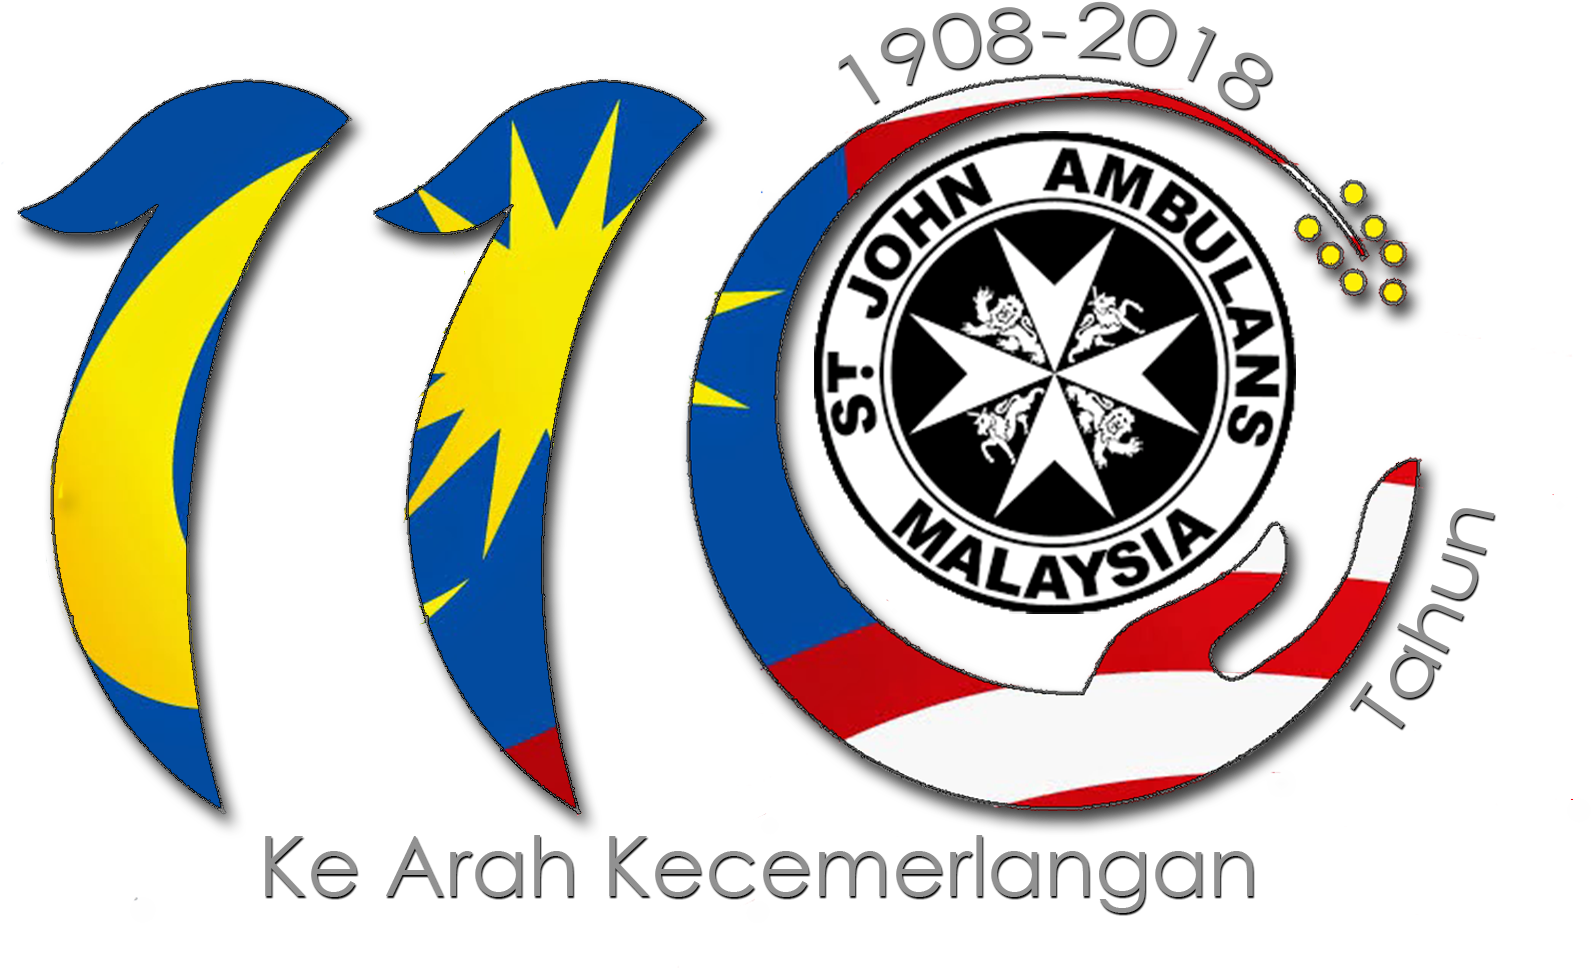 St John Ambulance Of Malaysia National Headquarters - St John Ambulance Malaysia (1793x1171)